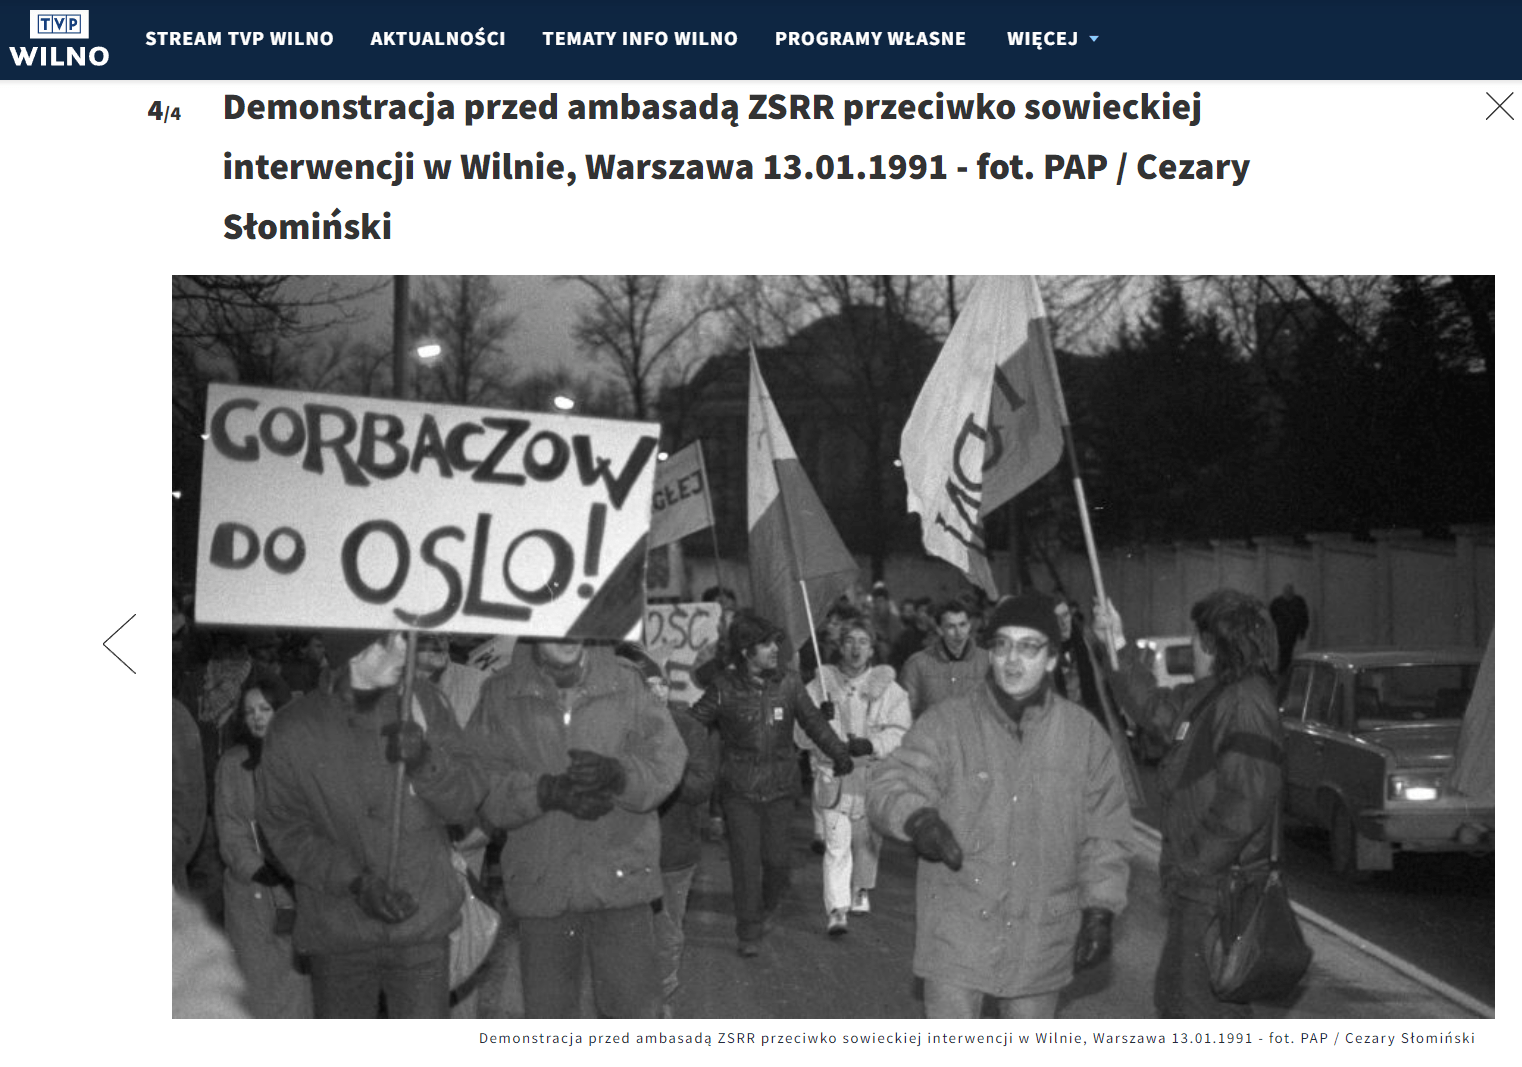 Demonstracja przed ambasadą ZSRR w Warszawie